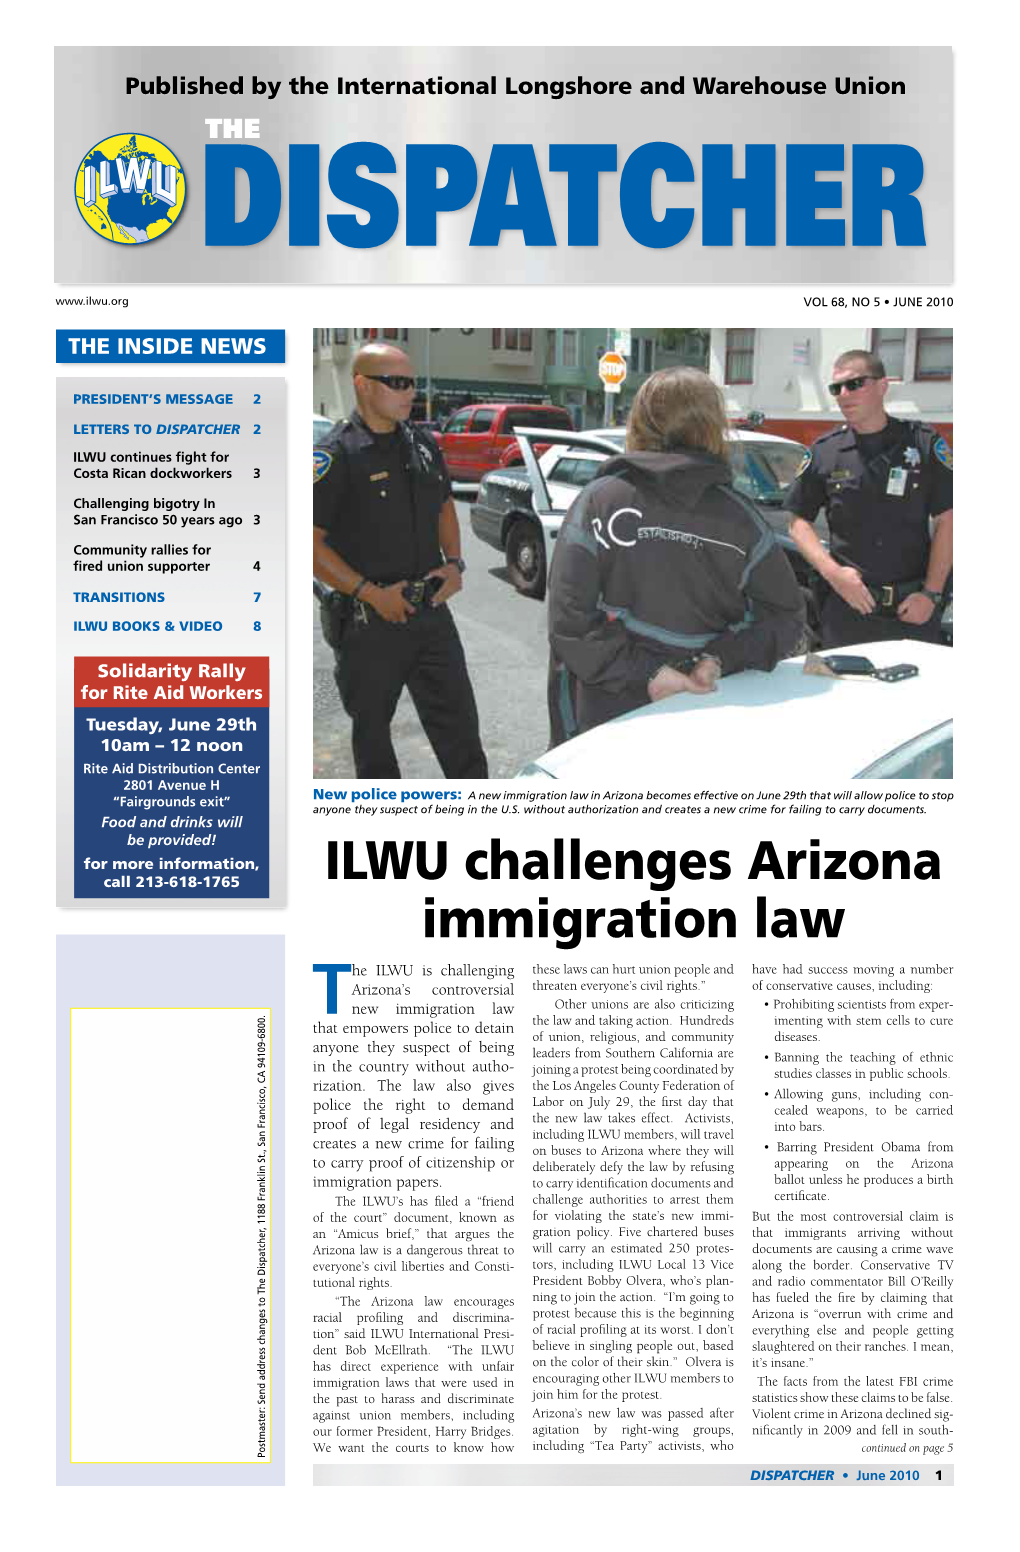 ILWU Challenges Arizona Immigration